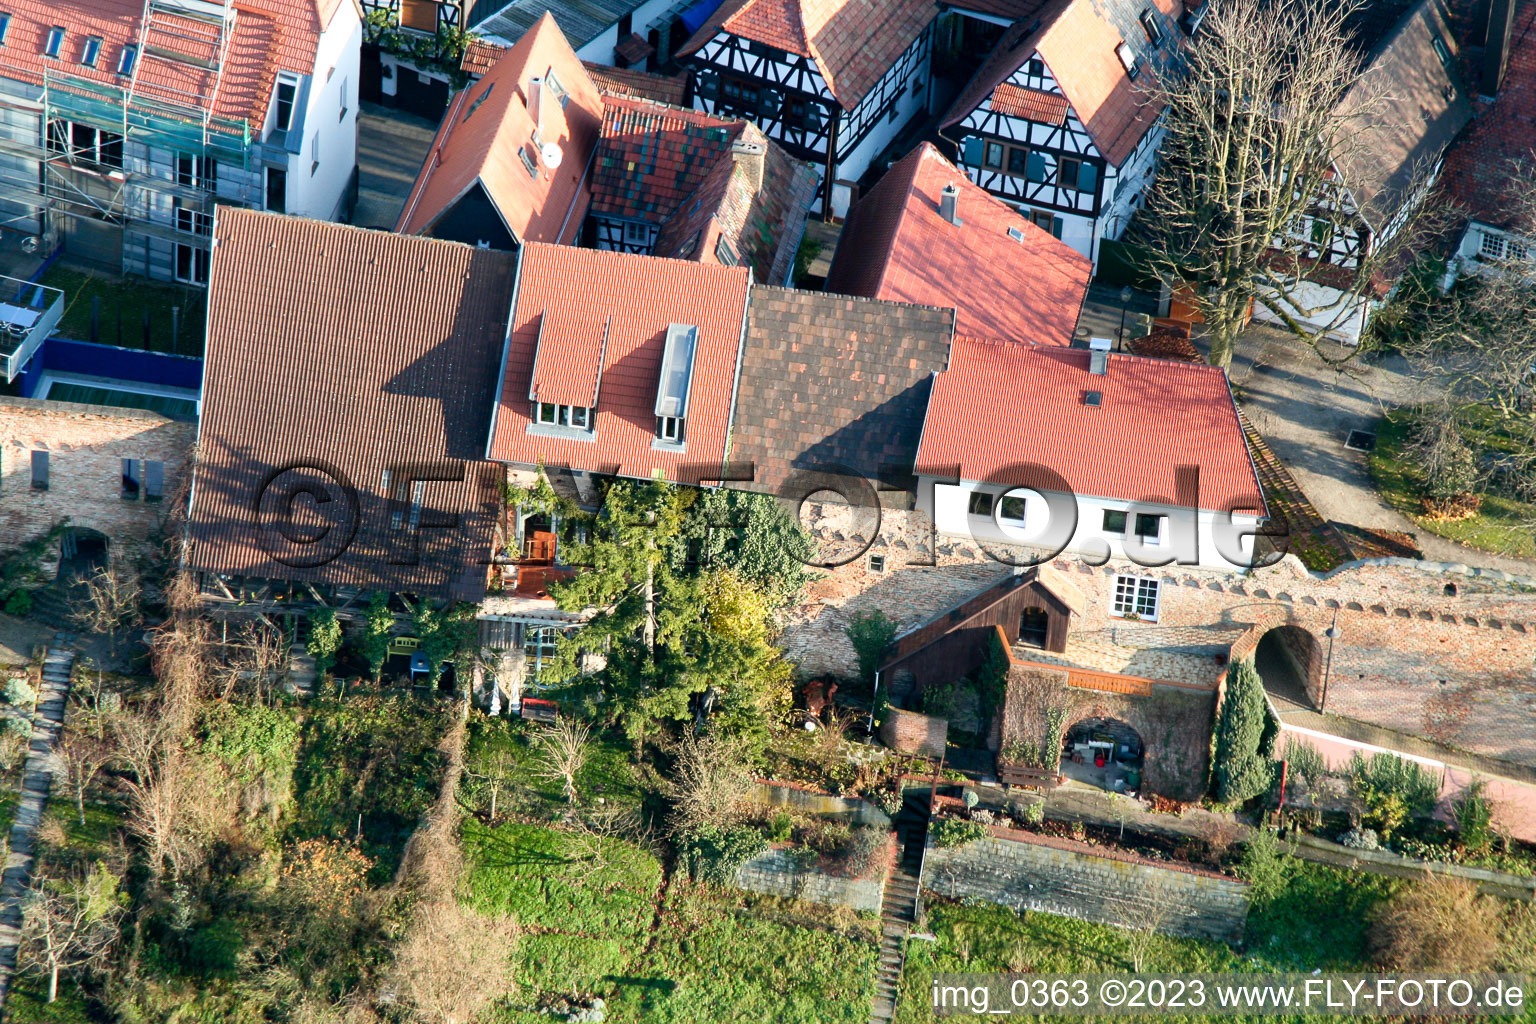 Ludwigstr. à Jockgrim dans le département Rhénanie-Palatinat, Allemagne vu d'un drone